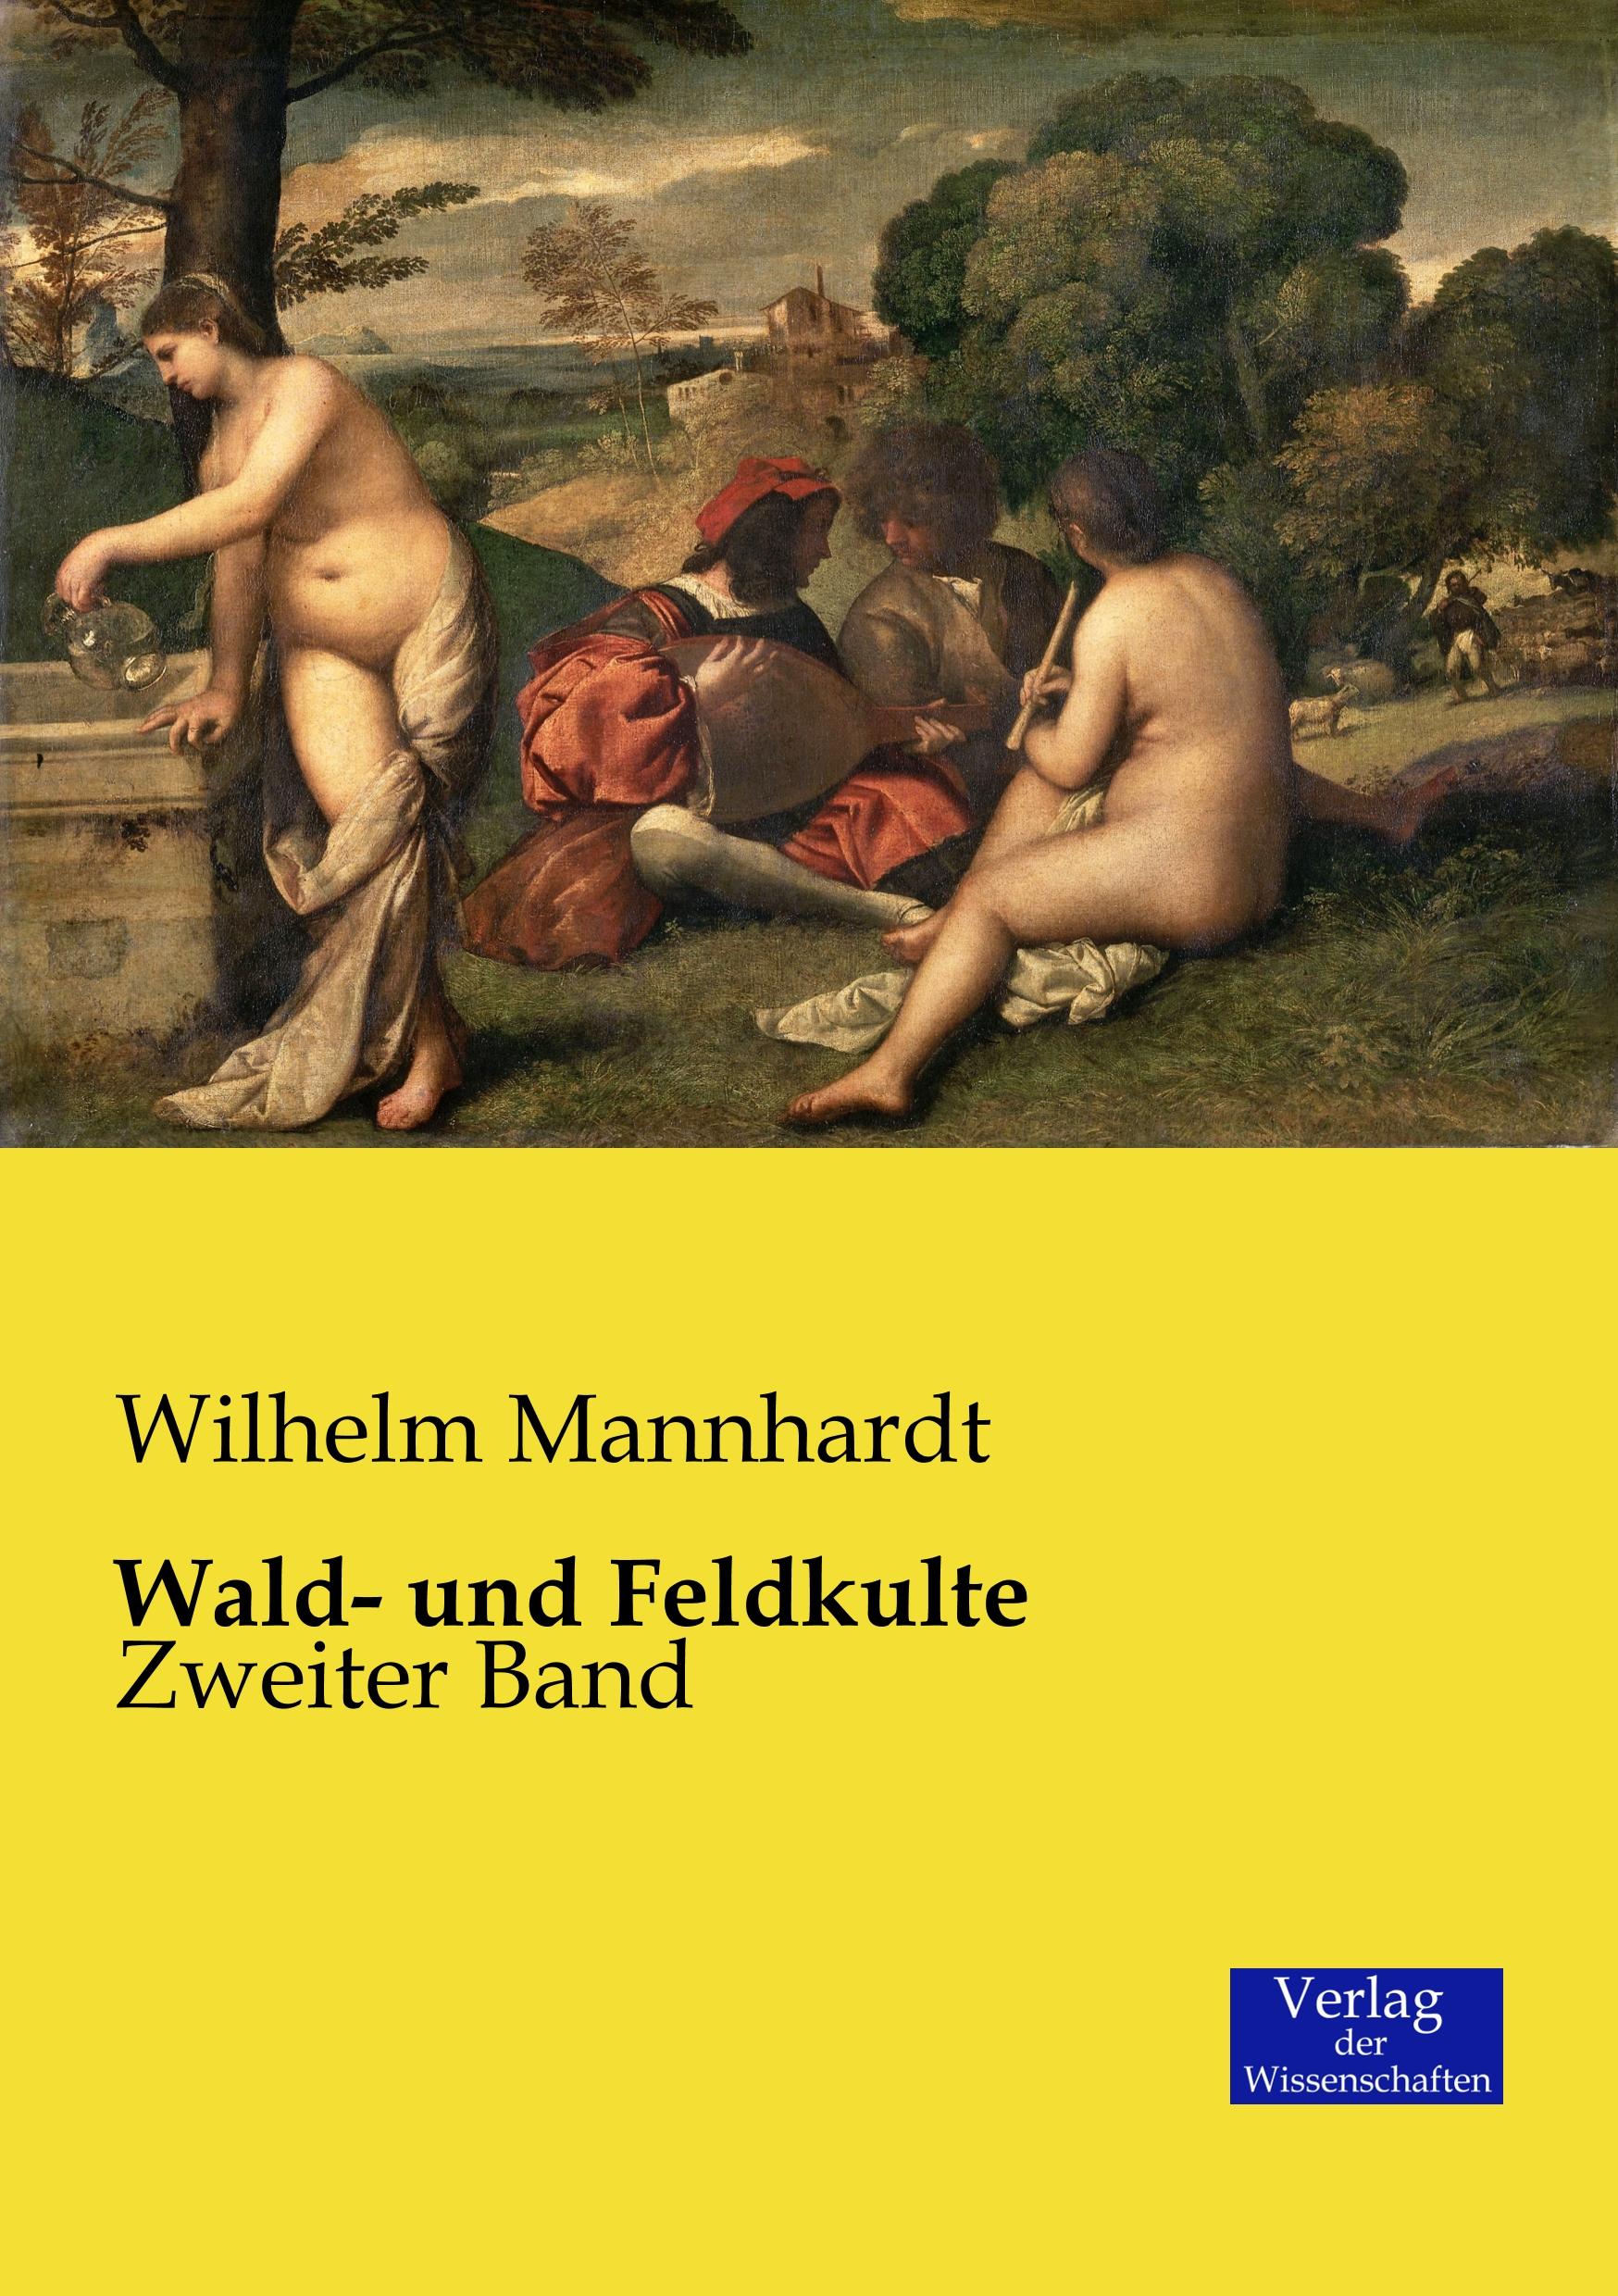 Wald- und Feldkulte | Zweiter Band | Wilhelm Mannhardt | Taschenbuch | Paperback | 412 S. | Deutsch | 2019 | Vero Verlag | EAN 9783957004734 - Mannhardt, Wilhelm